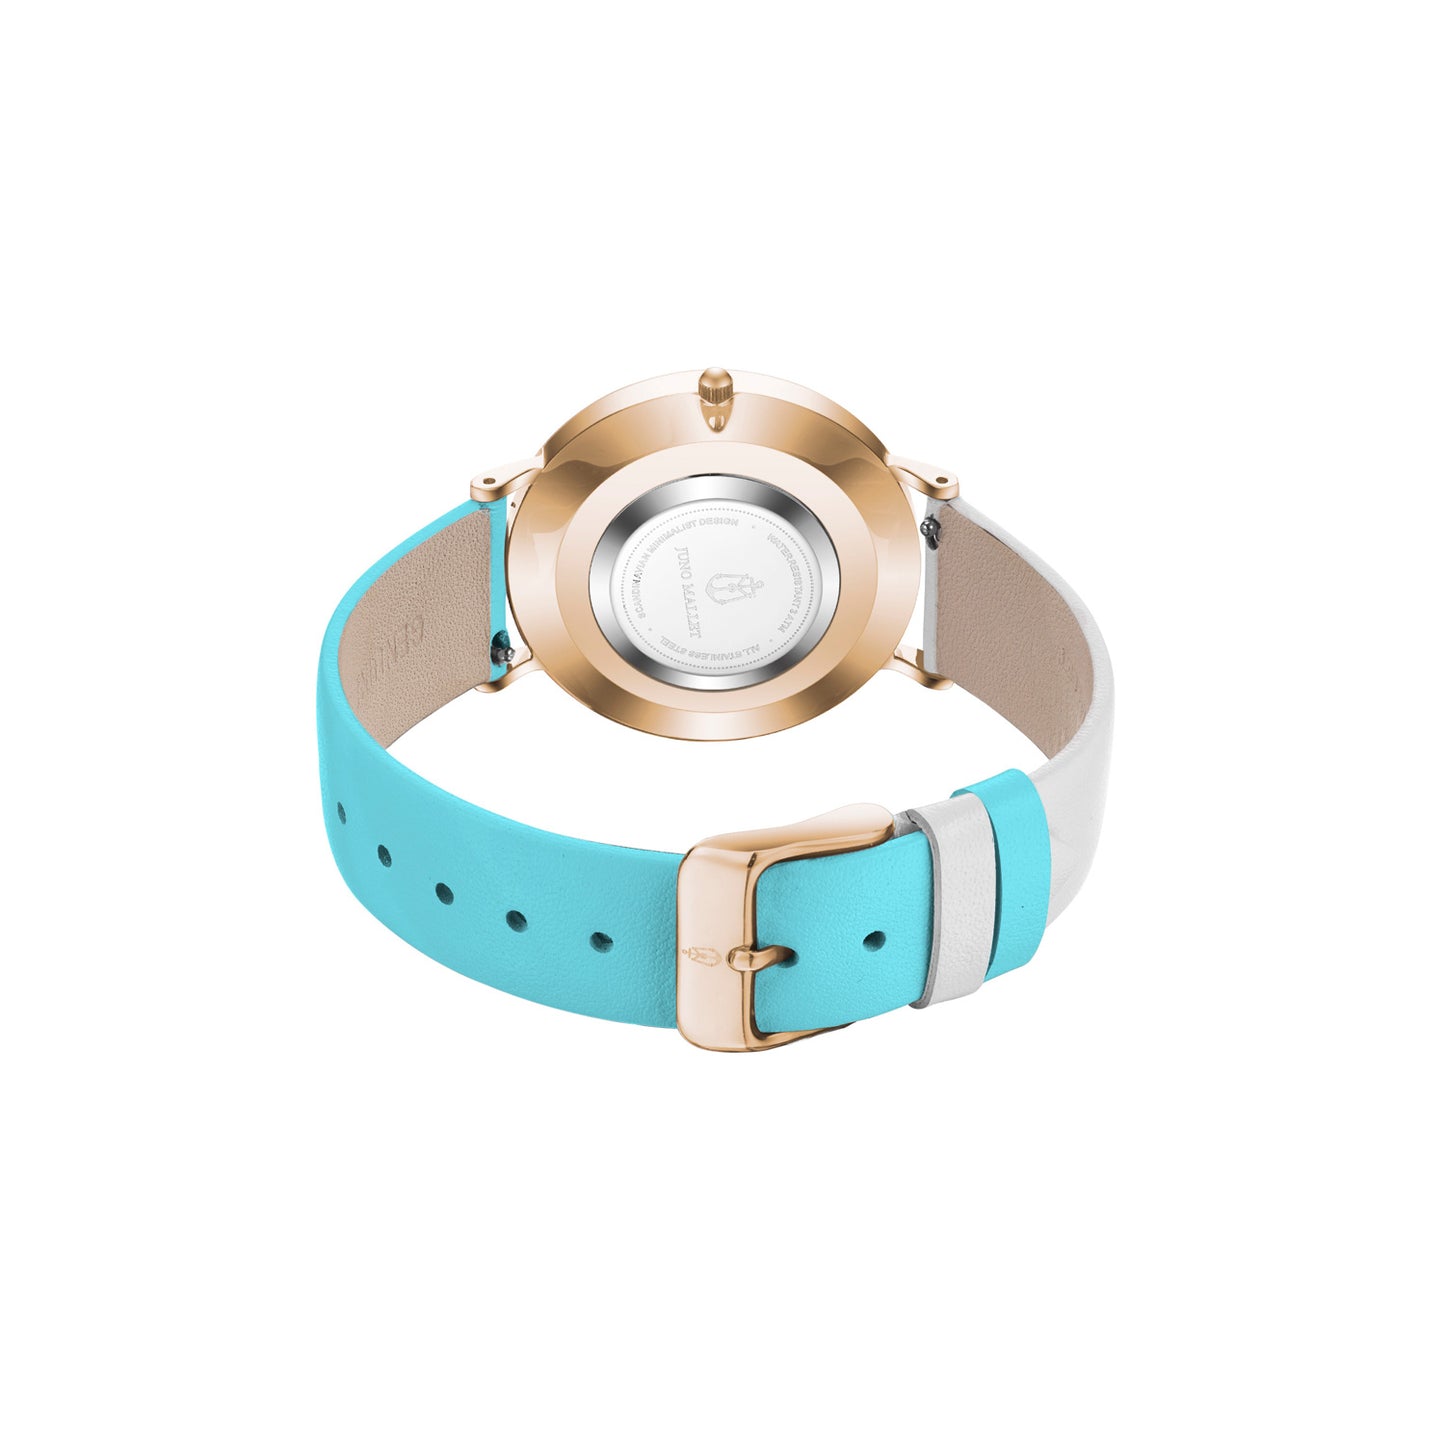 CLASH / Tiffany Blue / White / 36mm / Women Bracelet Watch